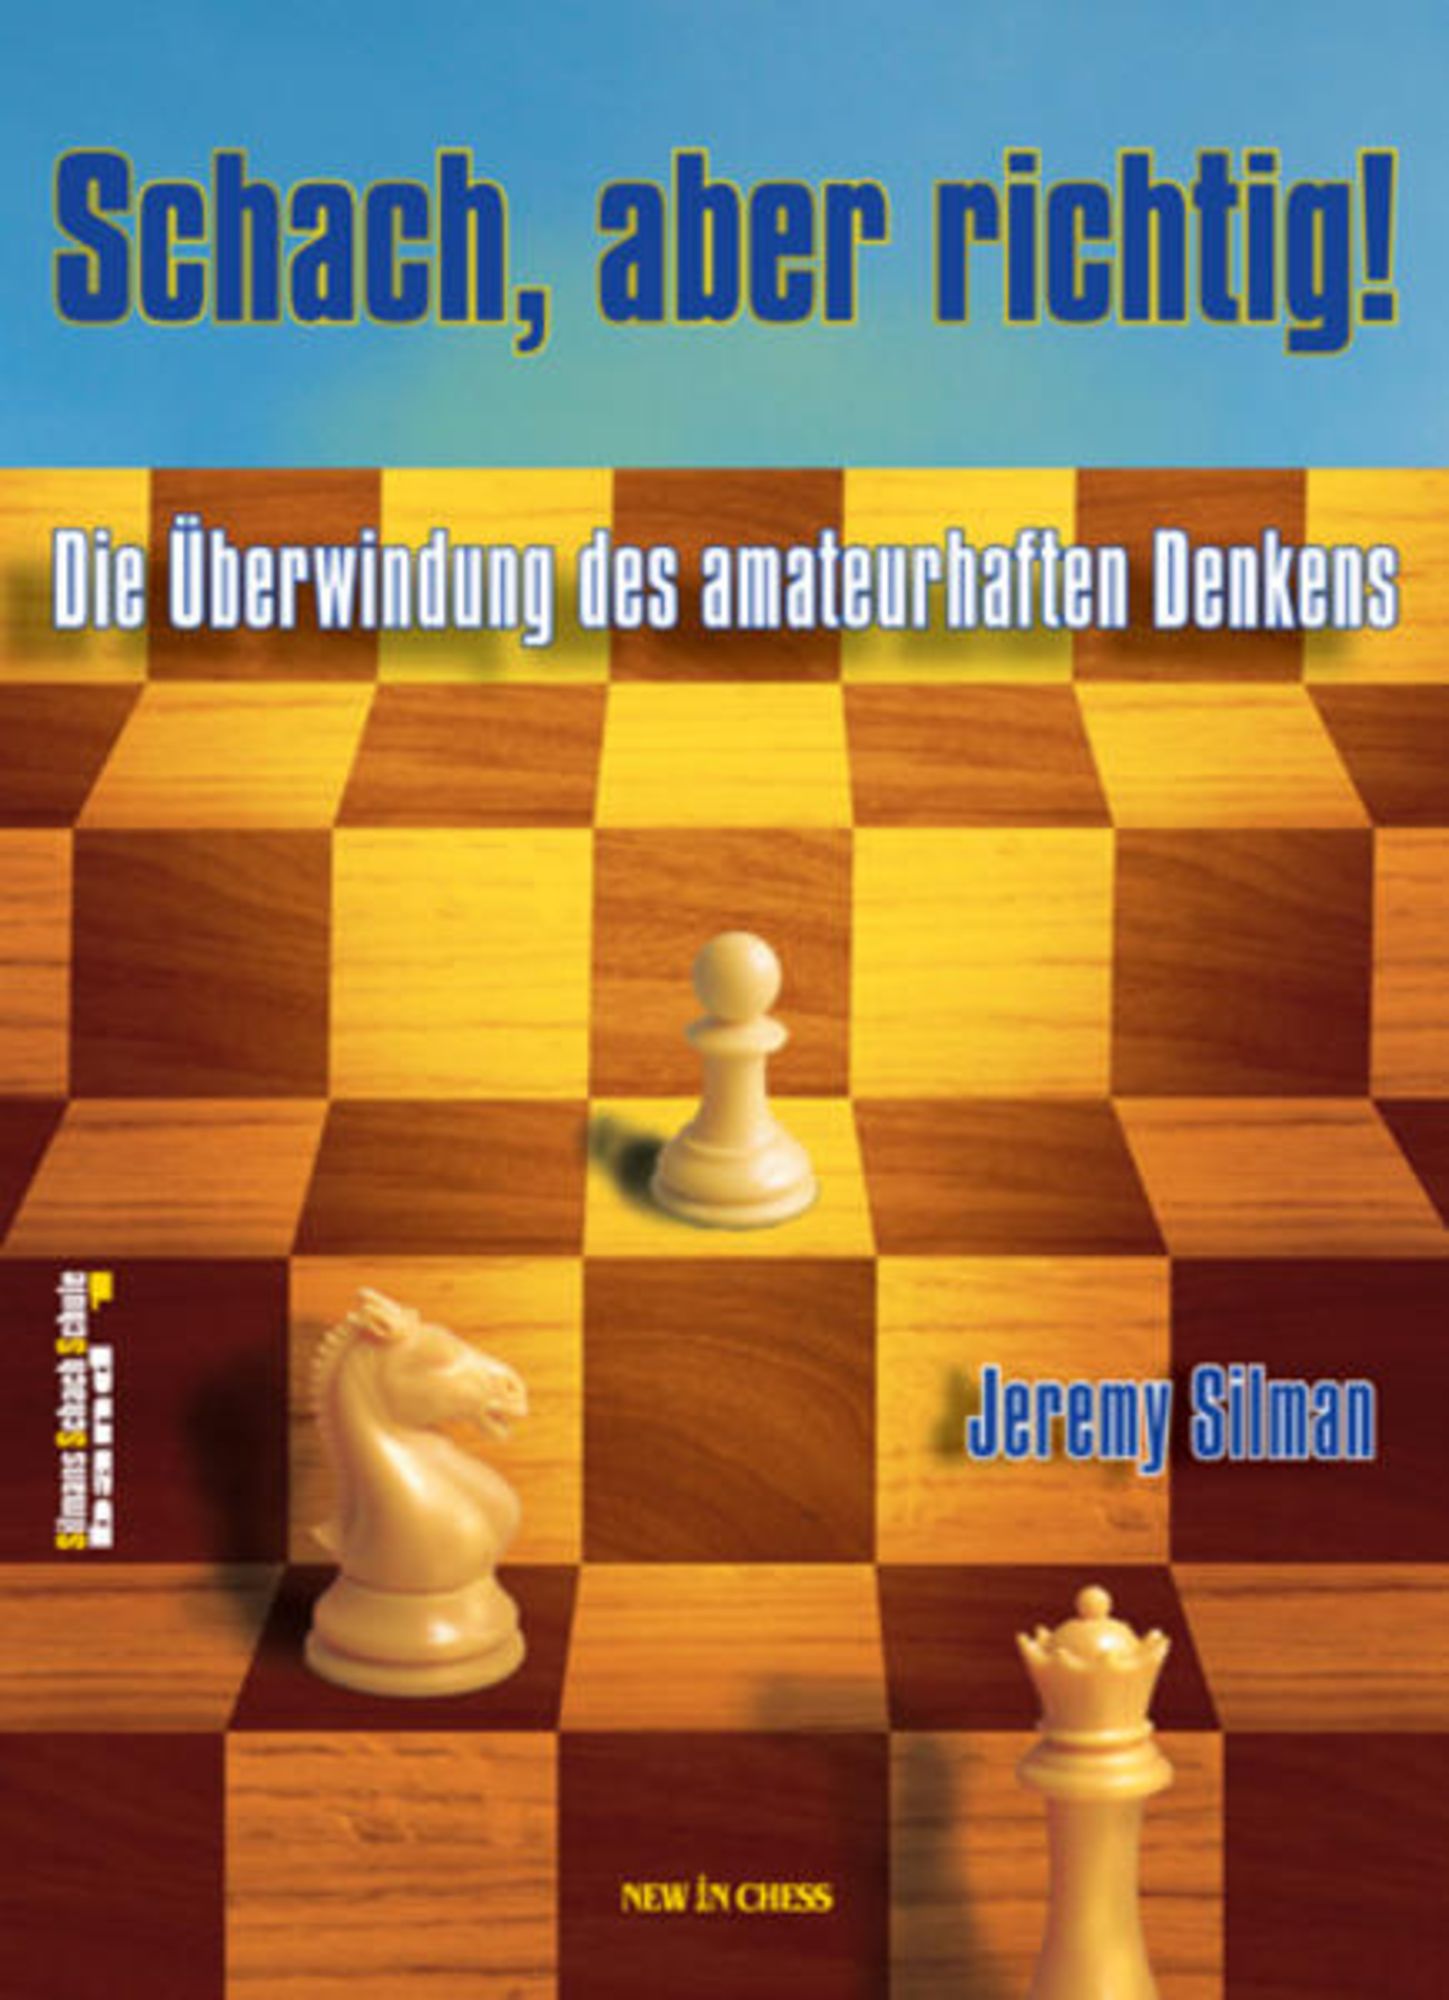 Schach, aber richtig! von Jeremy Silman - Buch